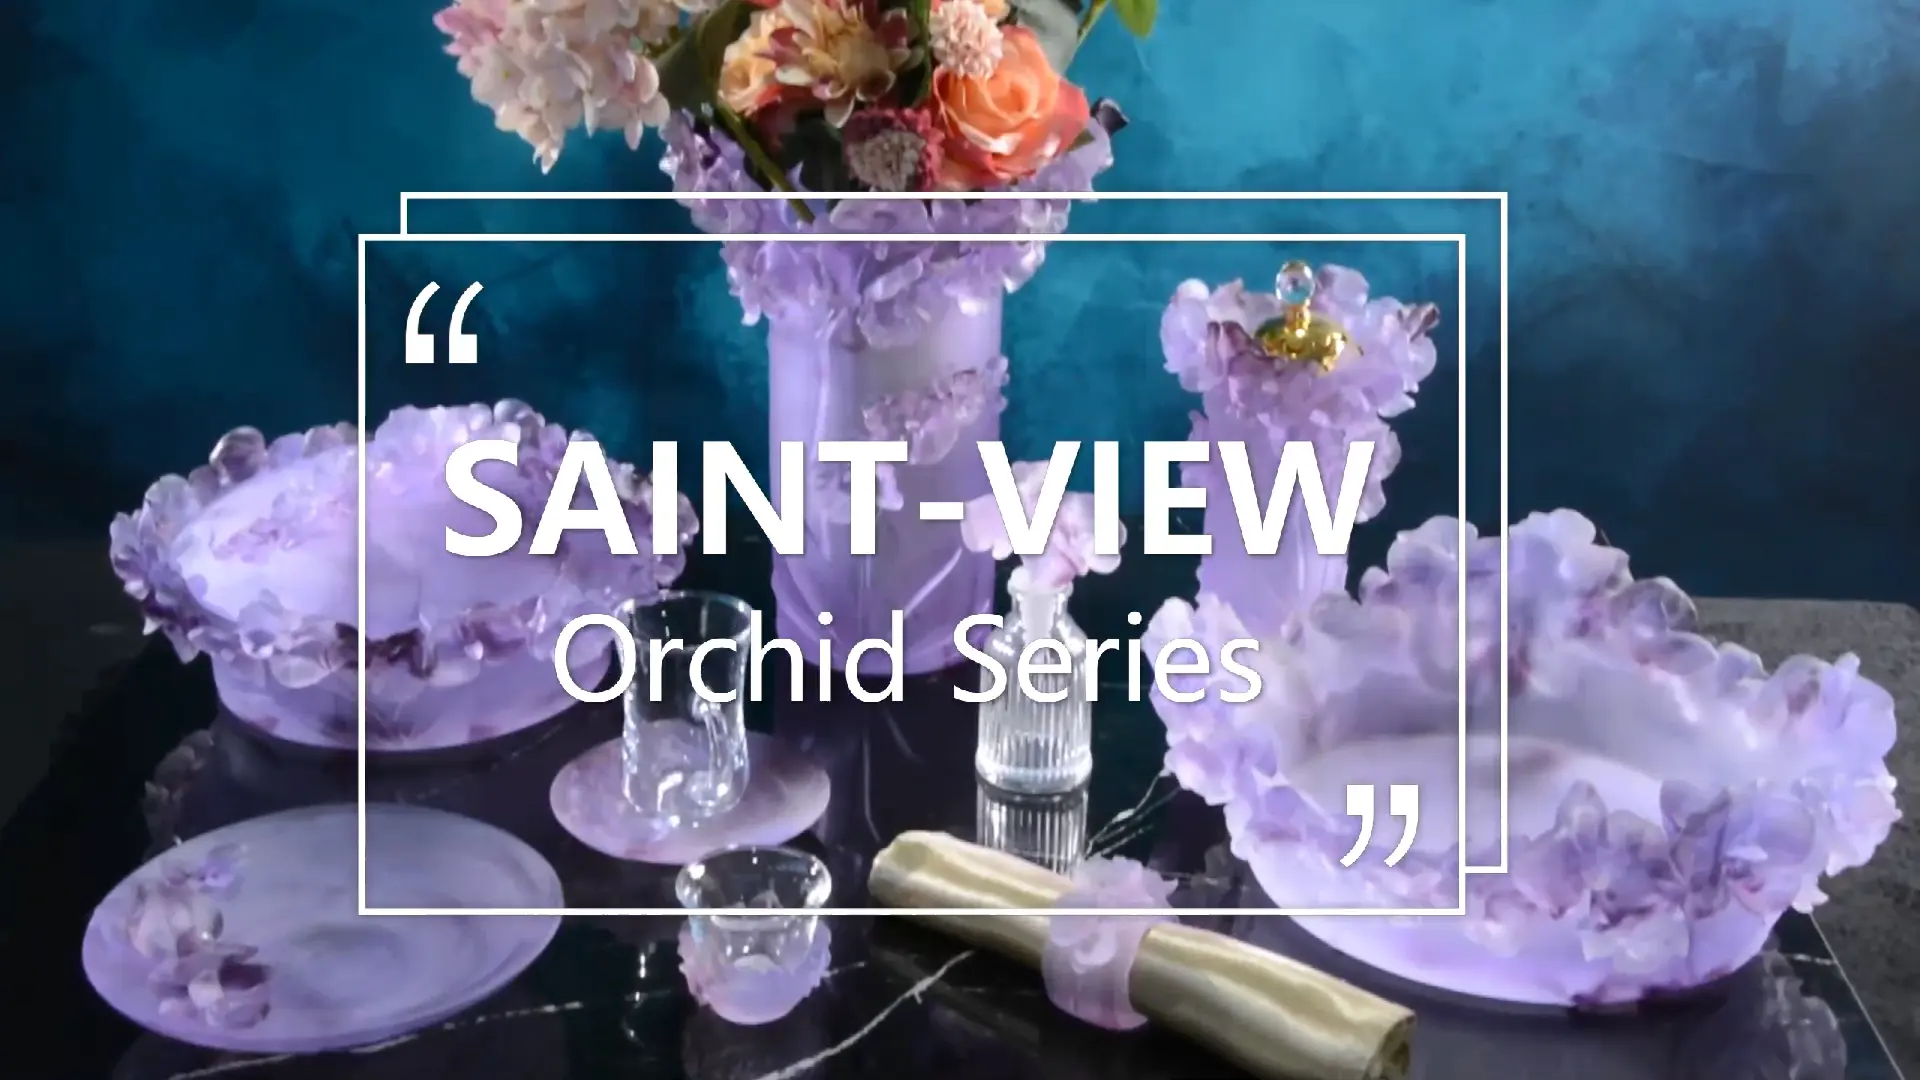 SAINT-VIEW 2021 Vintage Orchid Collection Casting Crystal pate de verre Serving Fruit Bowl